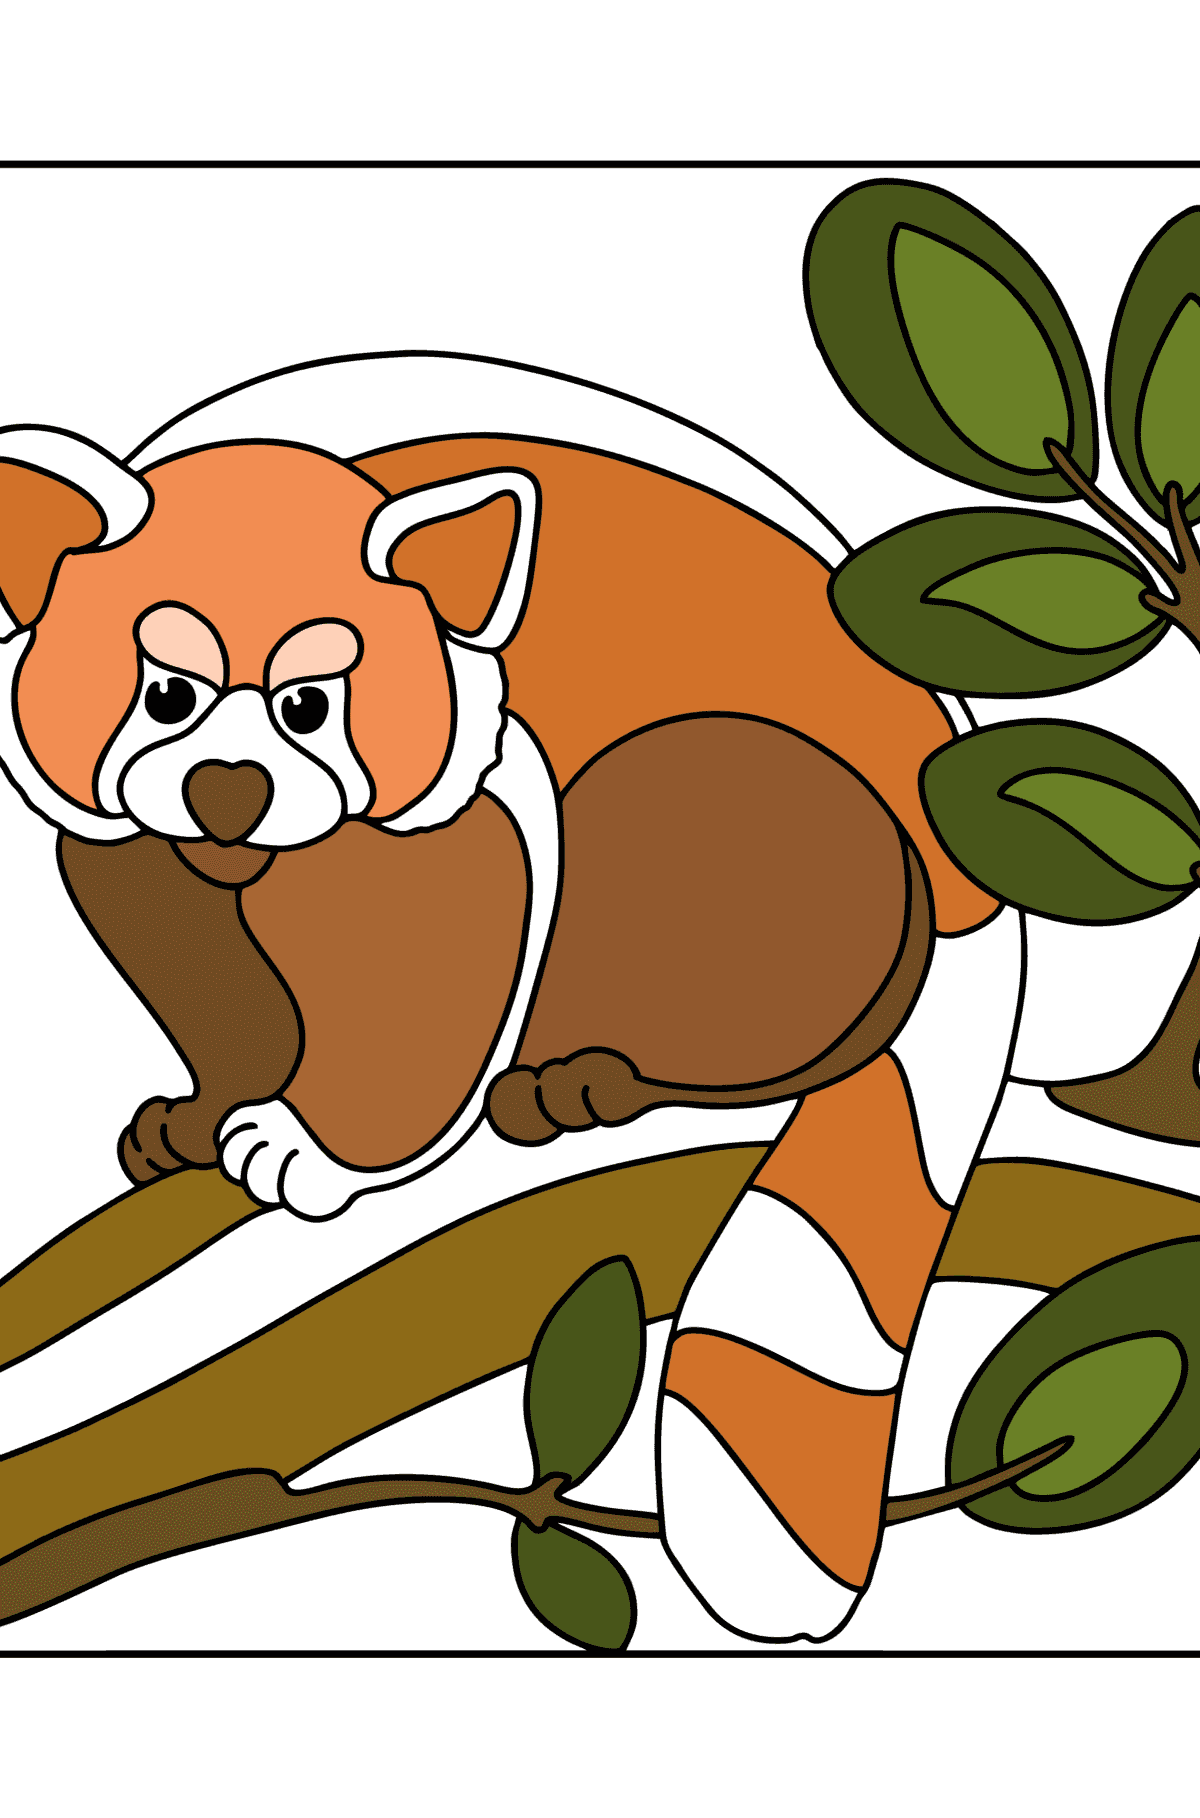 Boyama sayfası kırmızı panda - Boyamalar çocuklar için